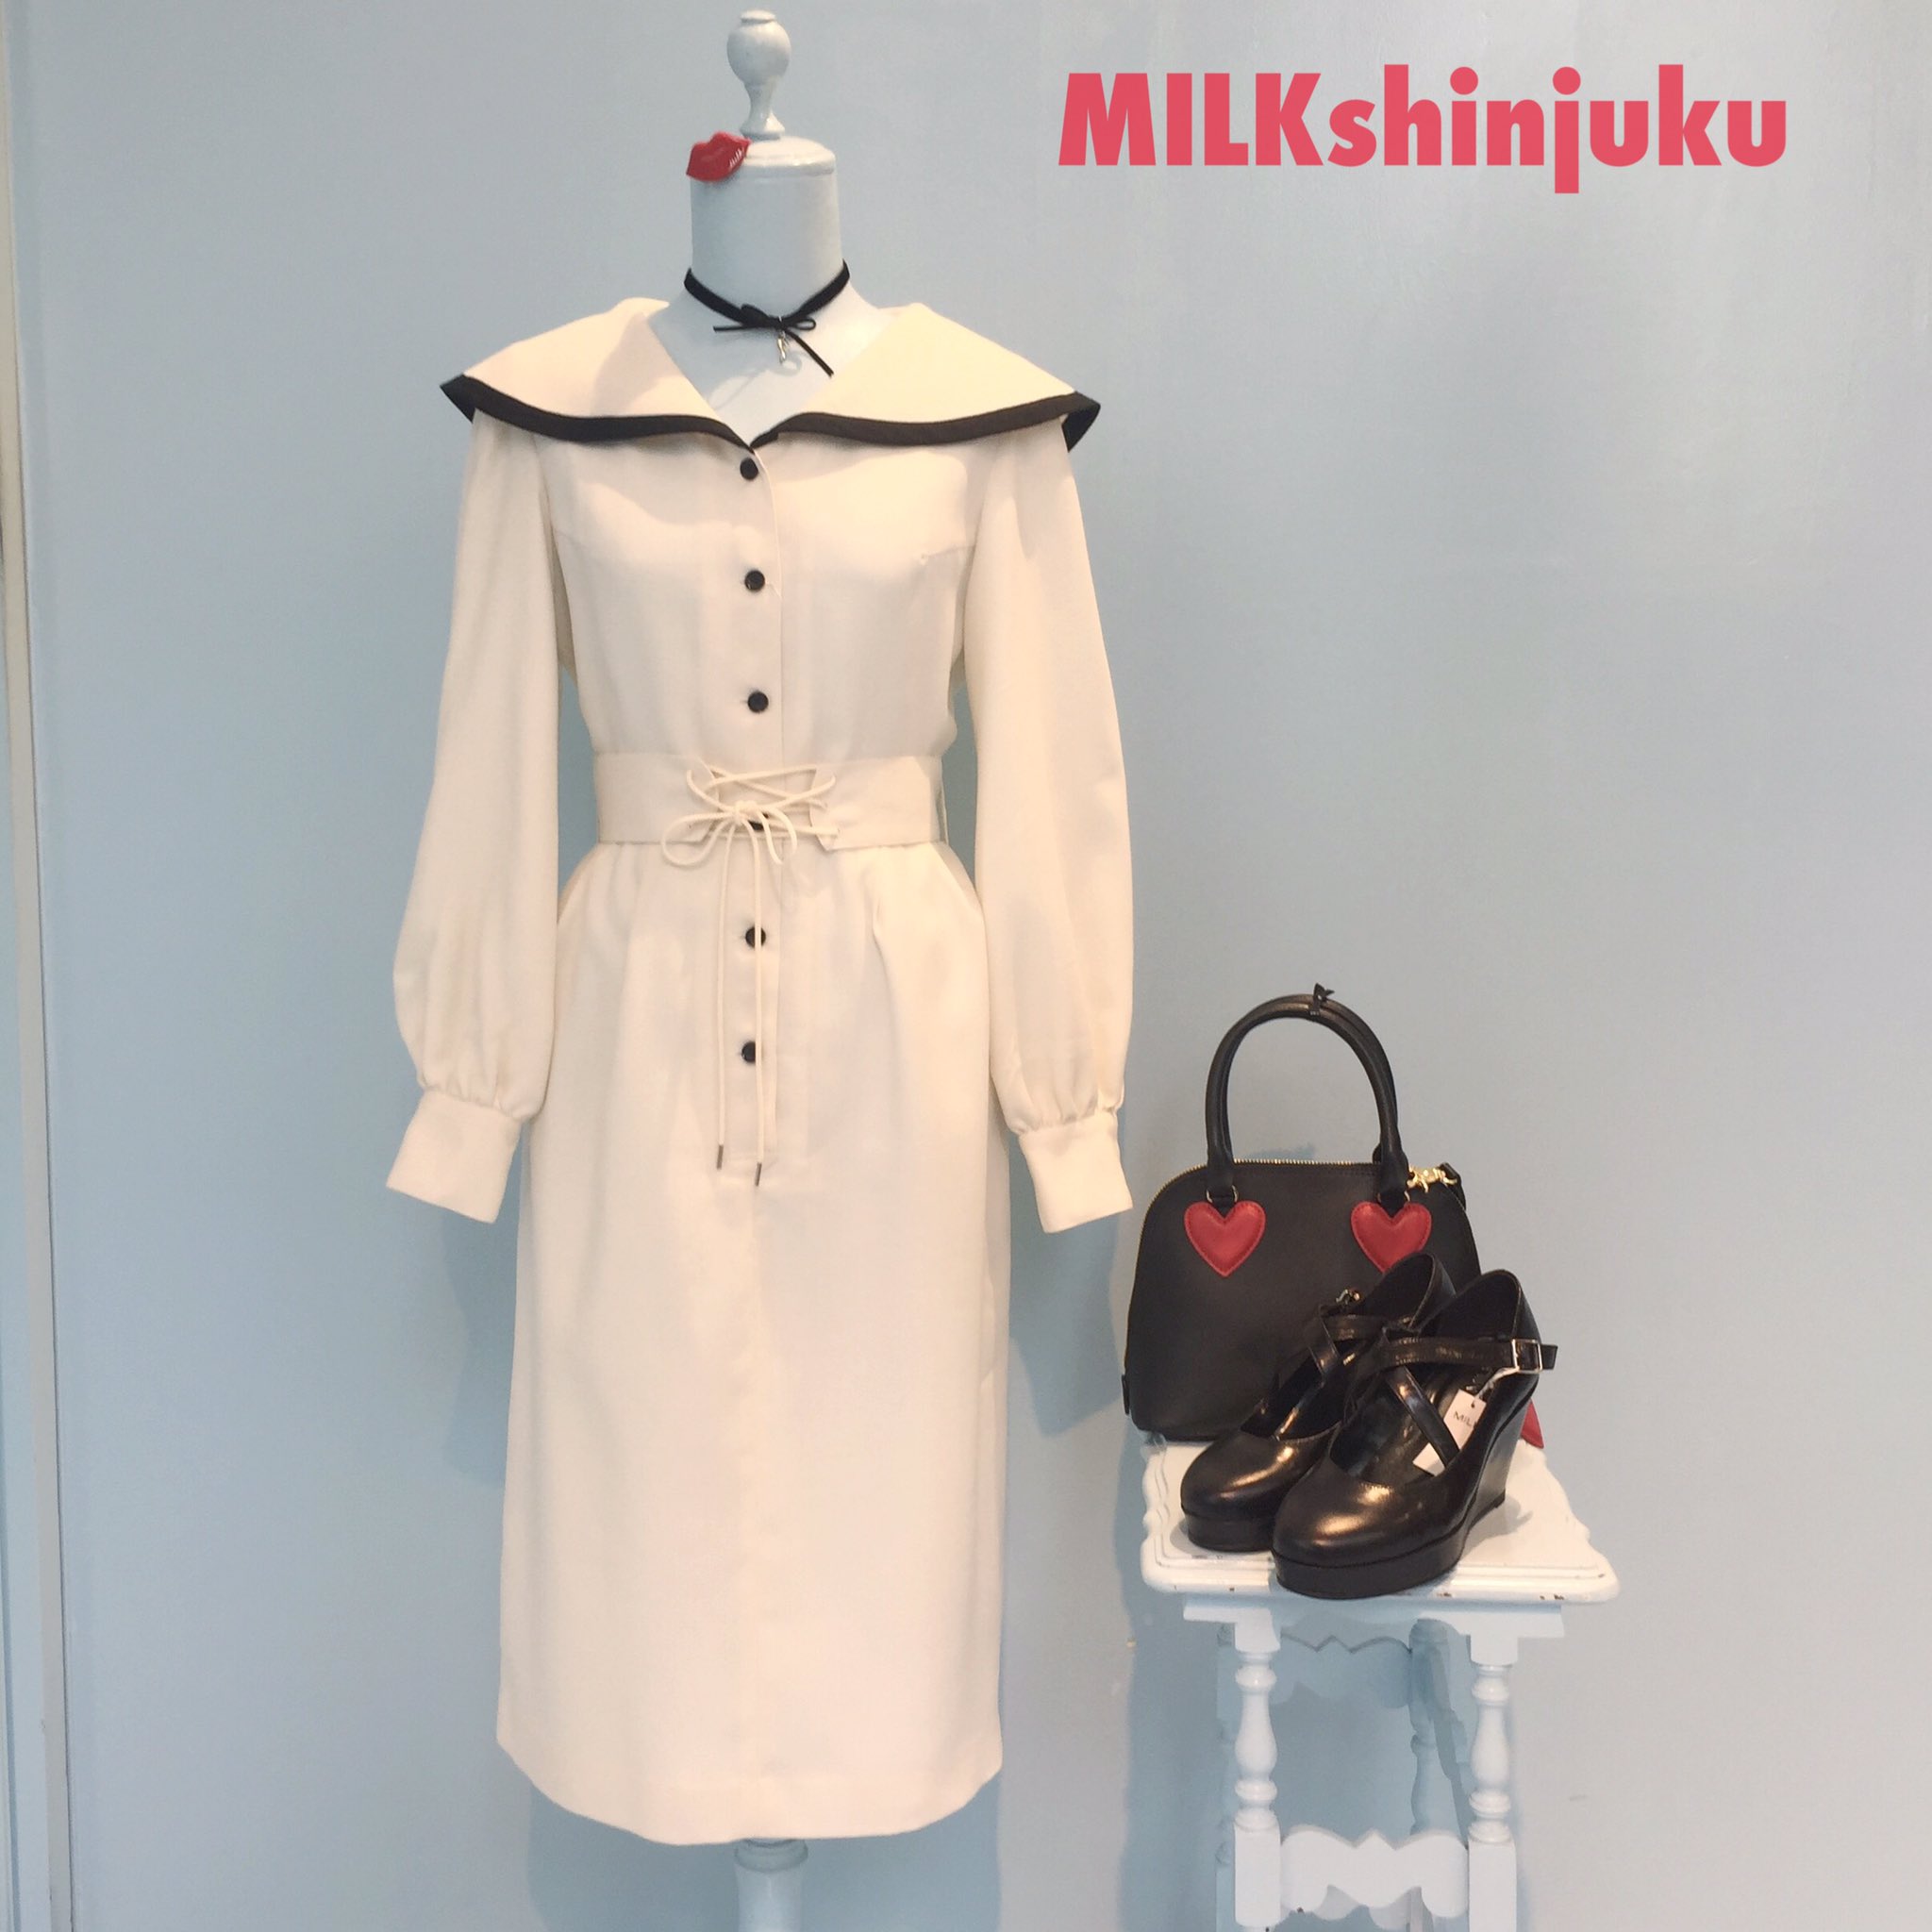 MILK新宿店 på Twitter: "MILKでは珍しい、タイトなラインのミドル丈ドレスが入荷致しました♡ 大きめなセーラーのような